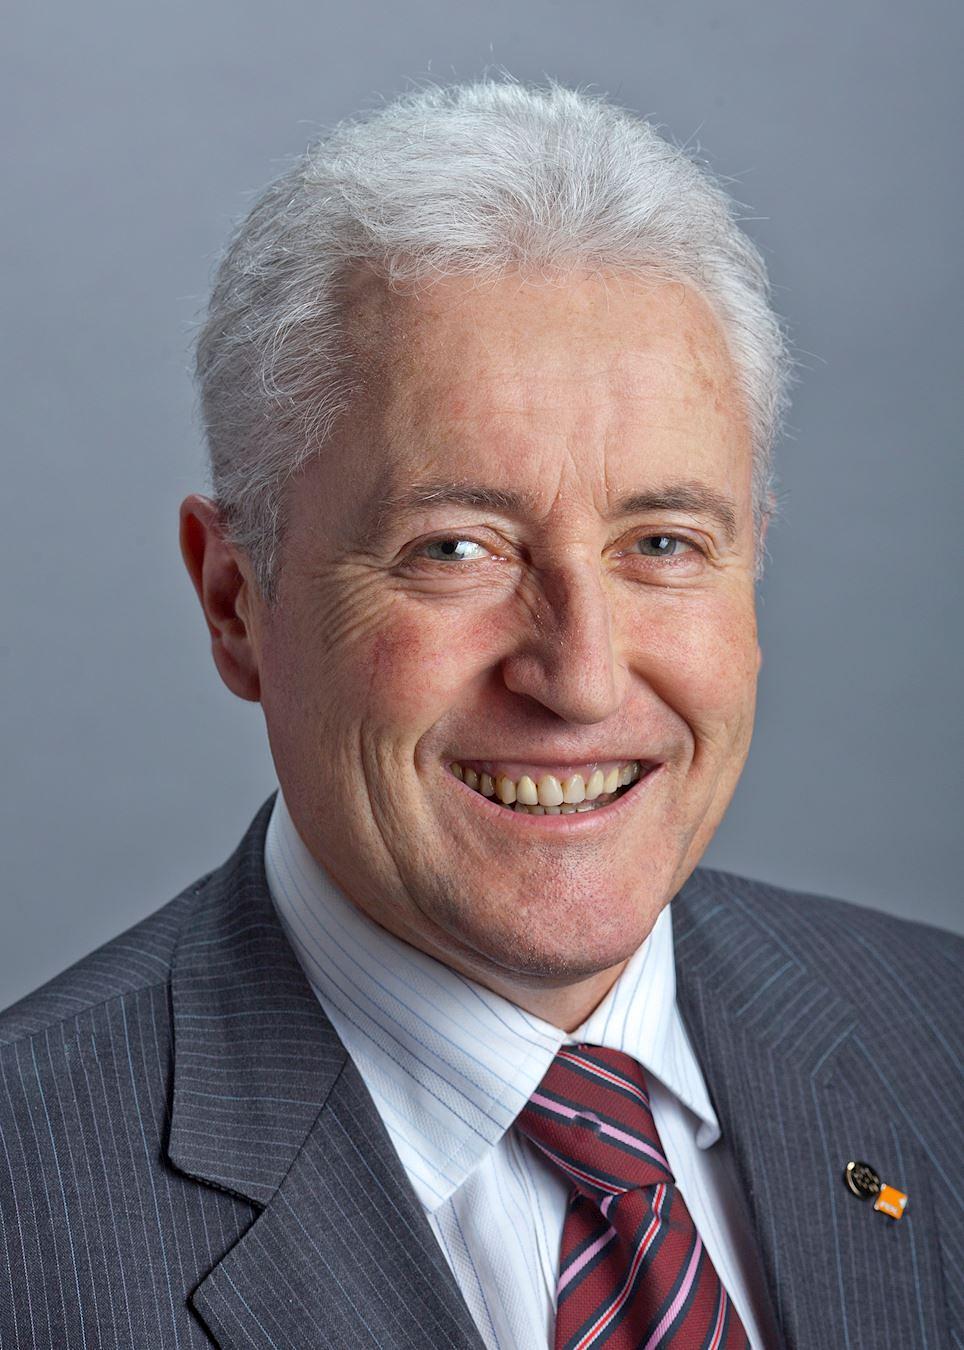  Luc Barthassat, bivši član švajcarske savezne skupštine i trenutni senator grada Ženeve